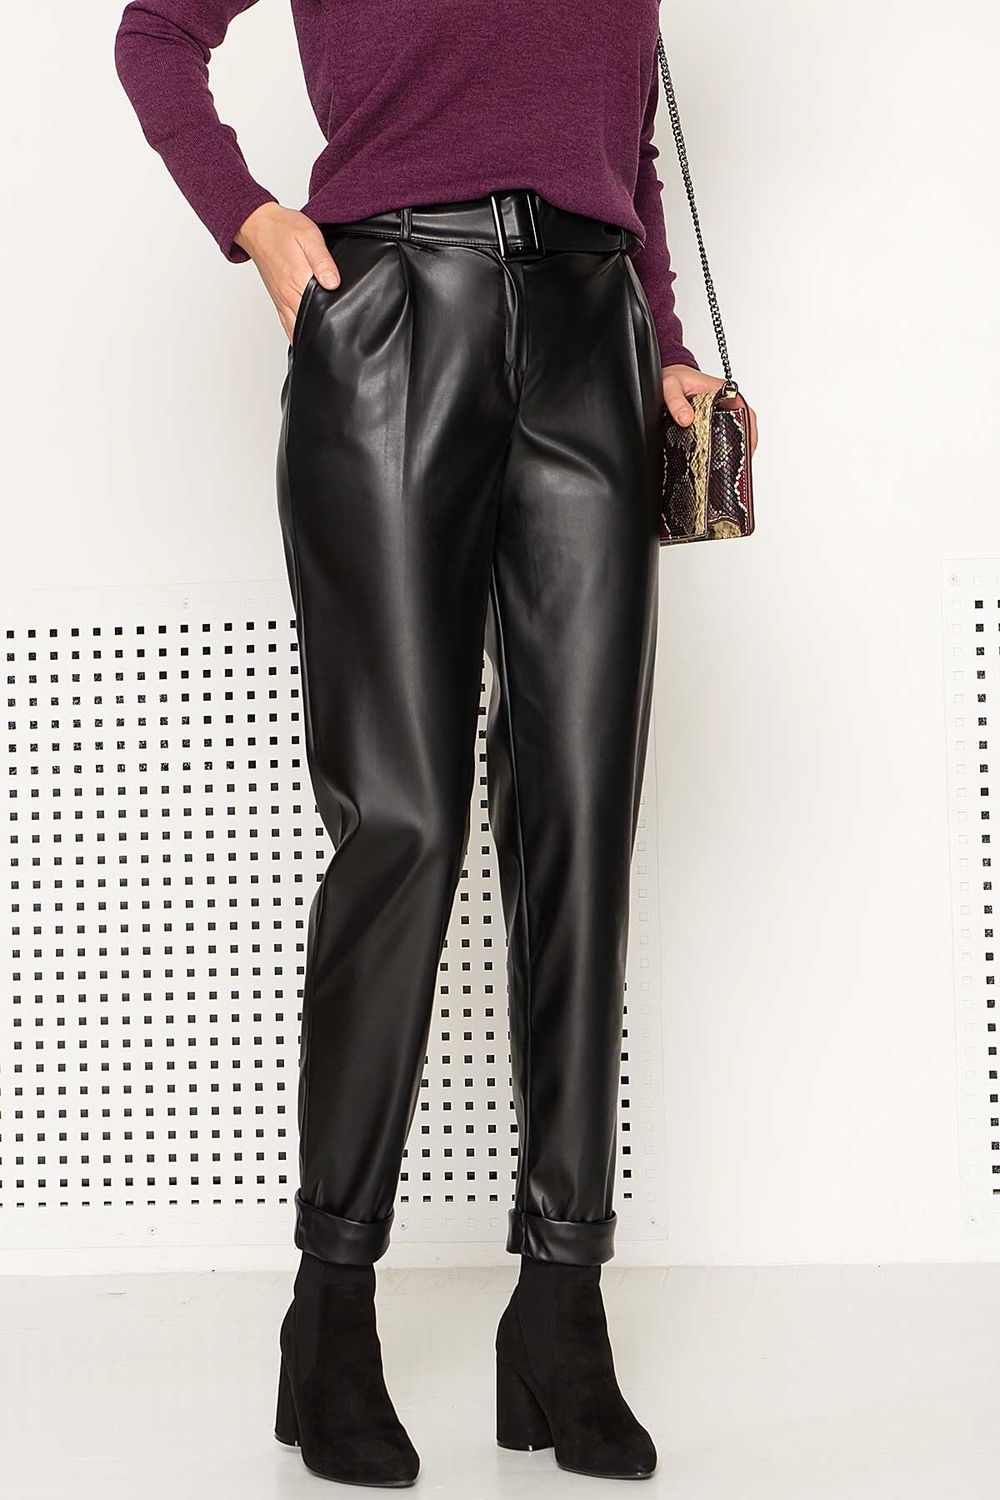 Жіночі шкіряні штани з отворотами чорні - фото